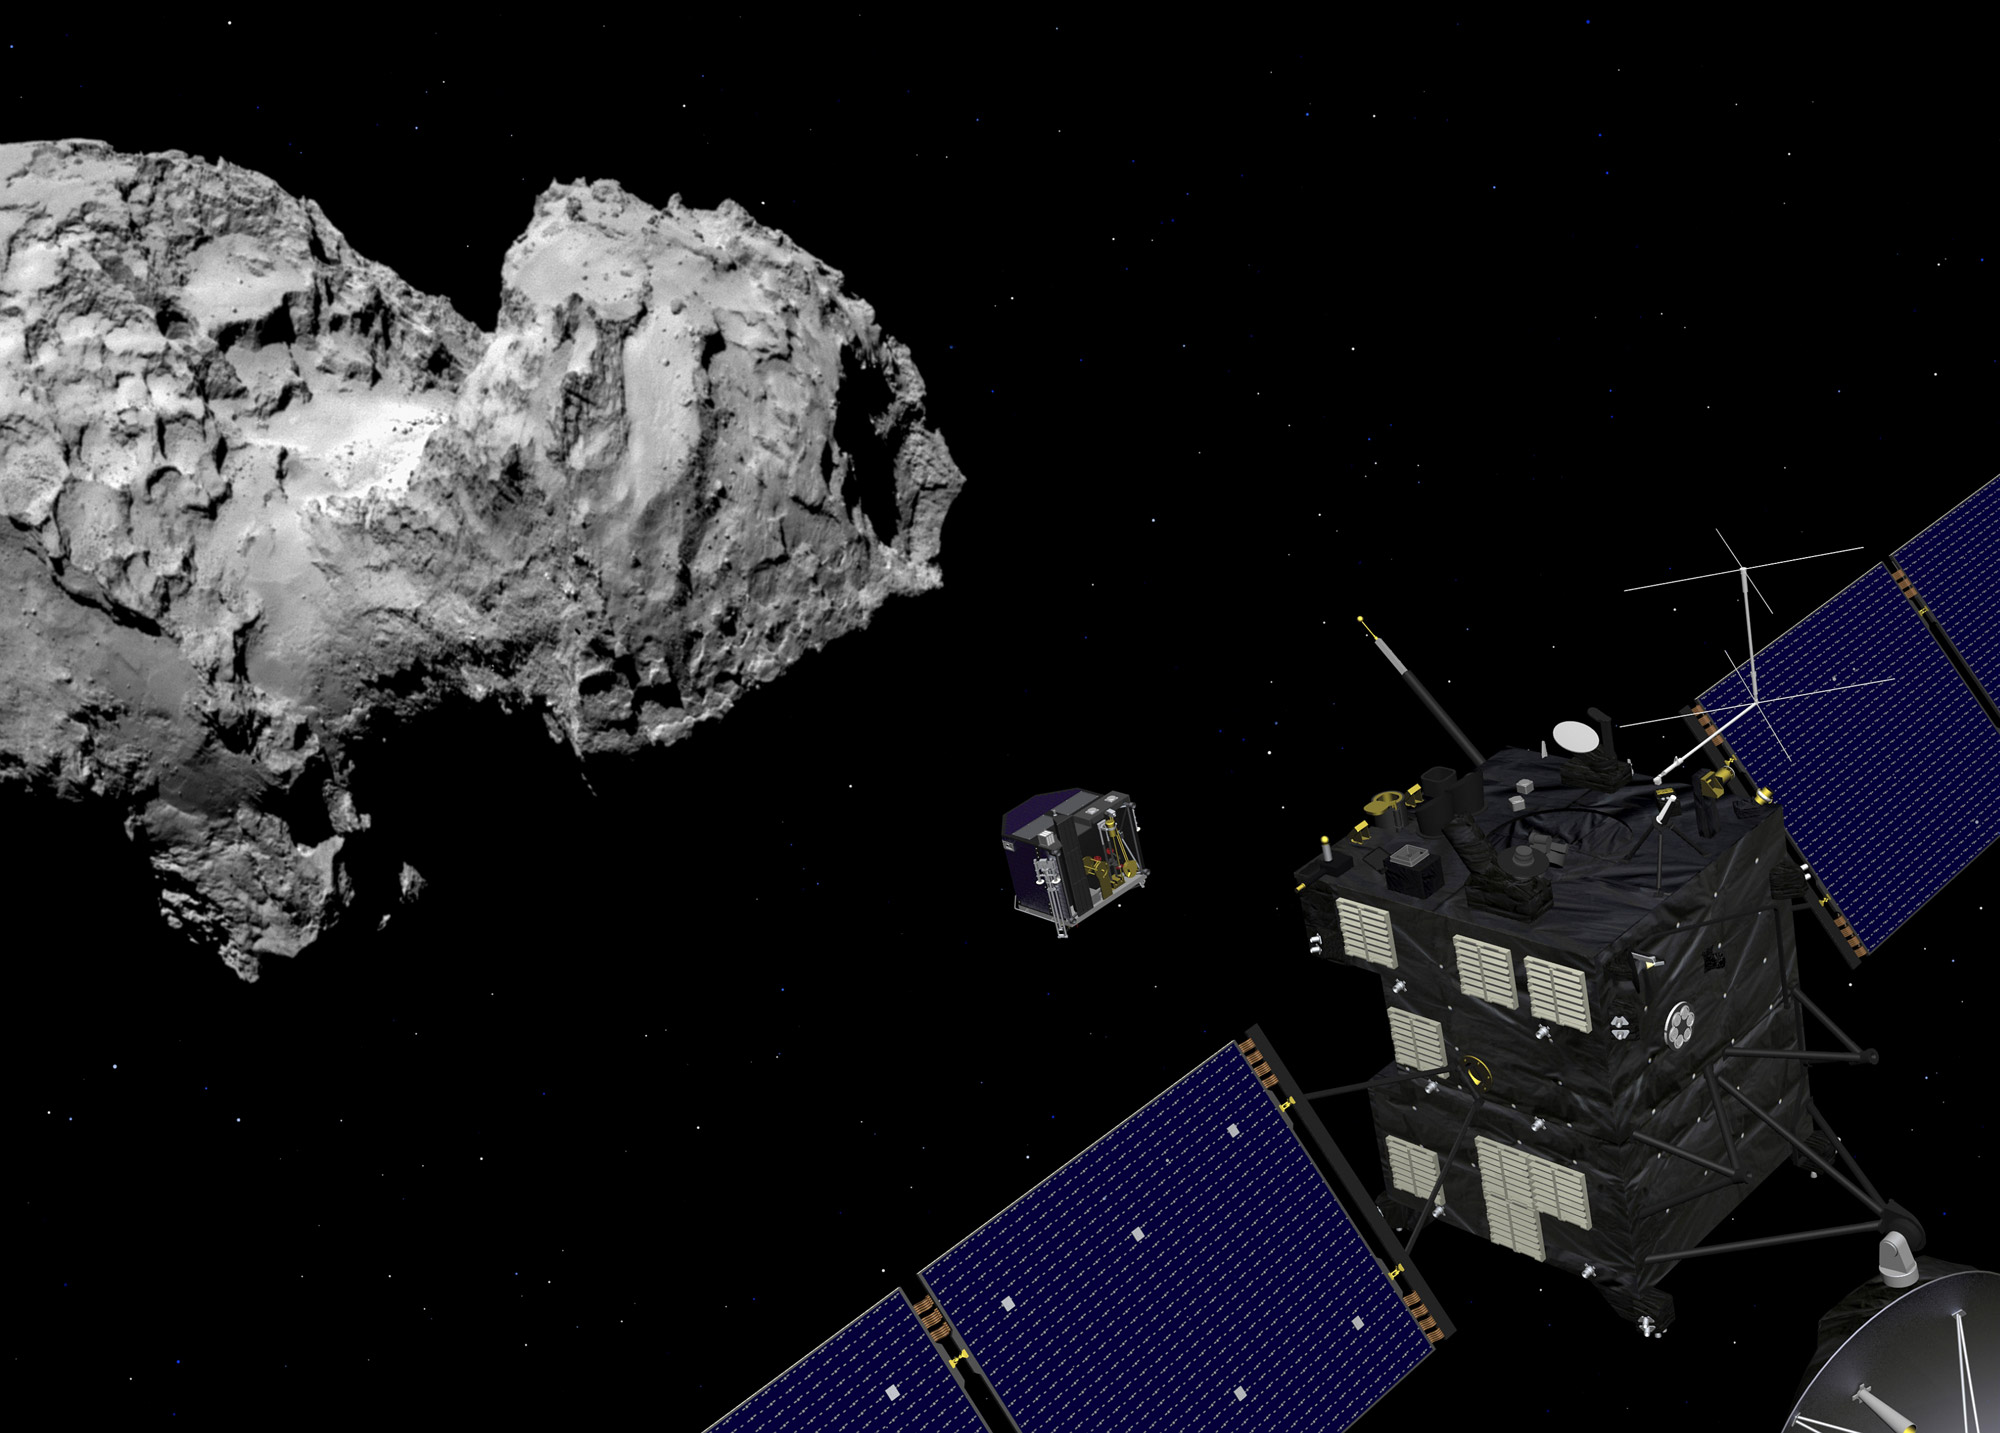 La sonde Rosetta a permis l'étude du noyau de la comète 67P/Churyumov-Gerasimenko durant une partie de son périple autour du Soleil. En orbite autour de la comète depuis le 6 août 2014, elle avait largué le module Philae qui s'est posé avec succès, après quelques rebonds. © ESA, J. Huart, 2014 ; image comète : ESA, Rosetta, MPS for Osiris Team MPS